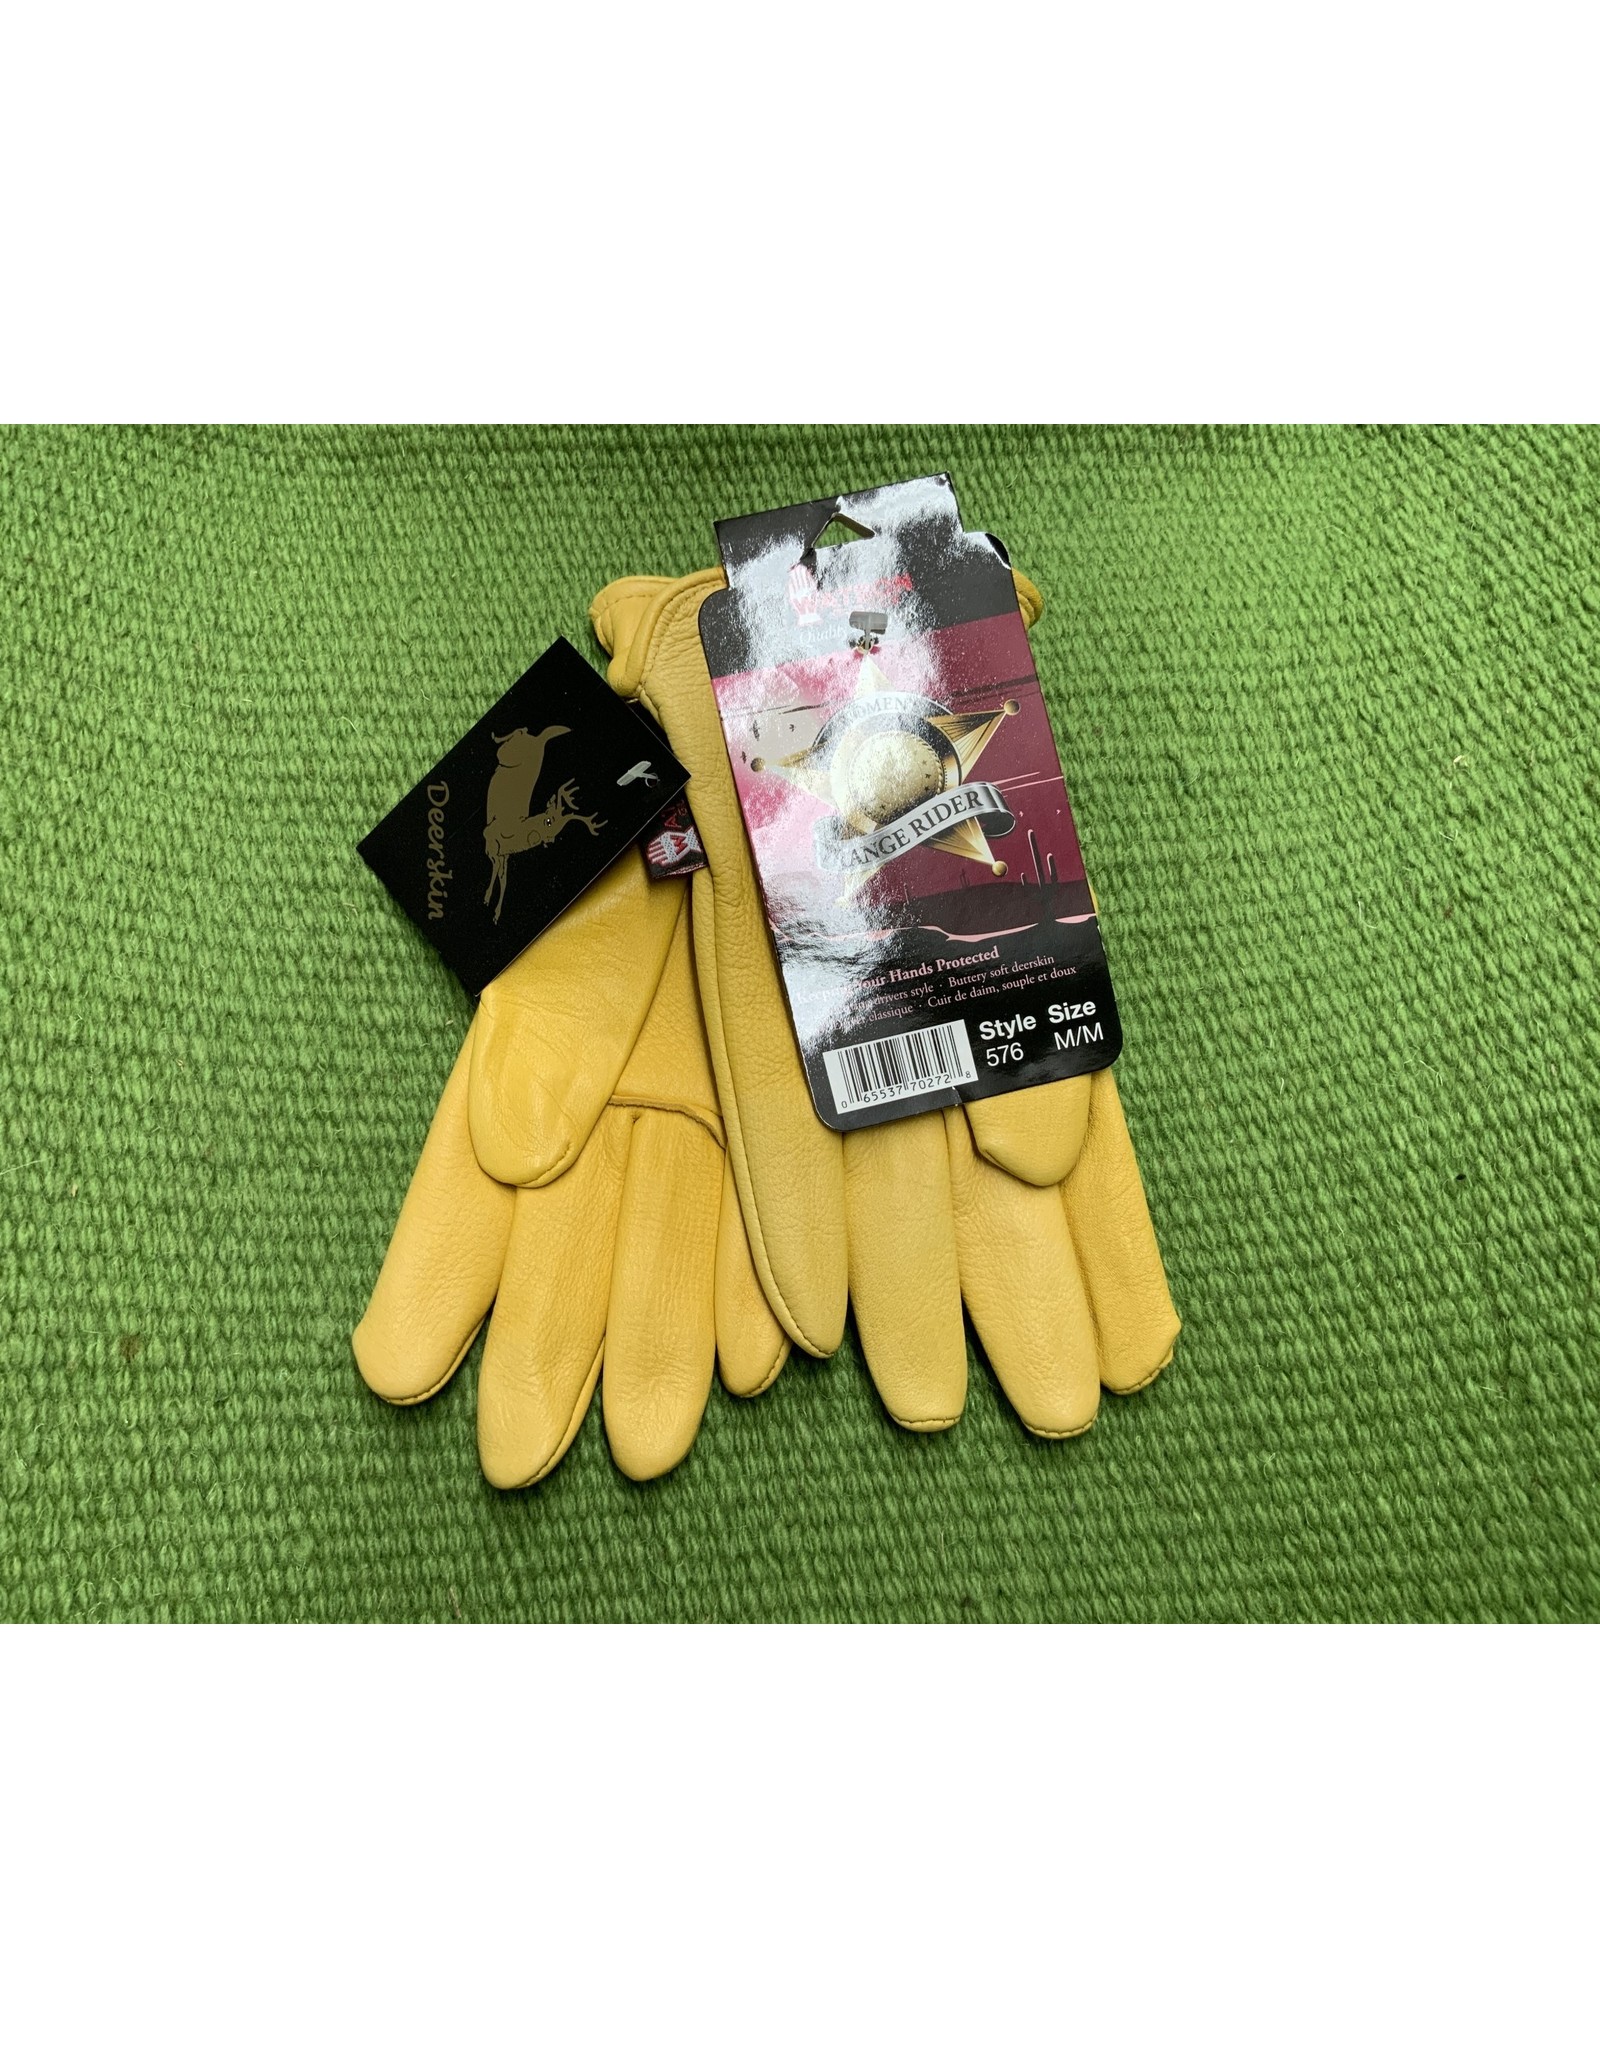 Watson Gloves Gloves*Ladies Range Rider- M 576